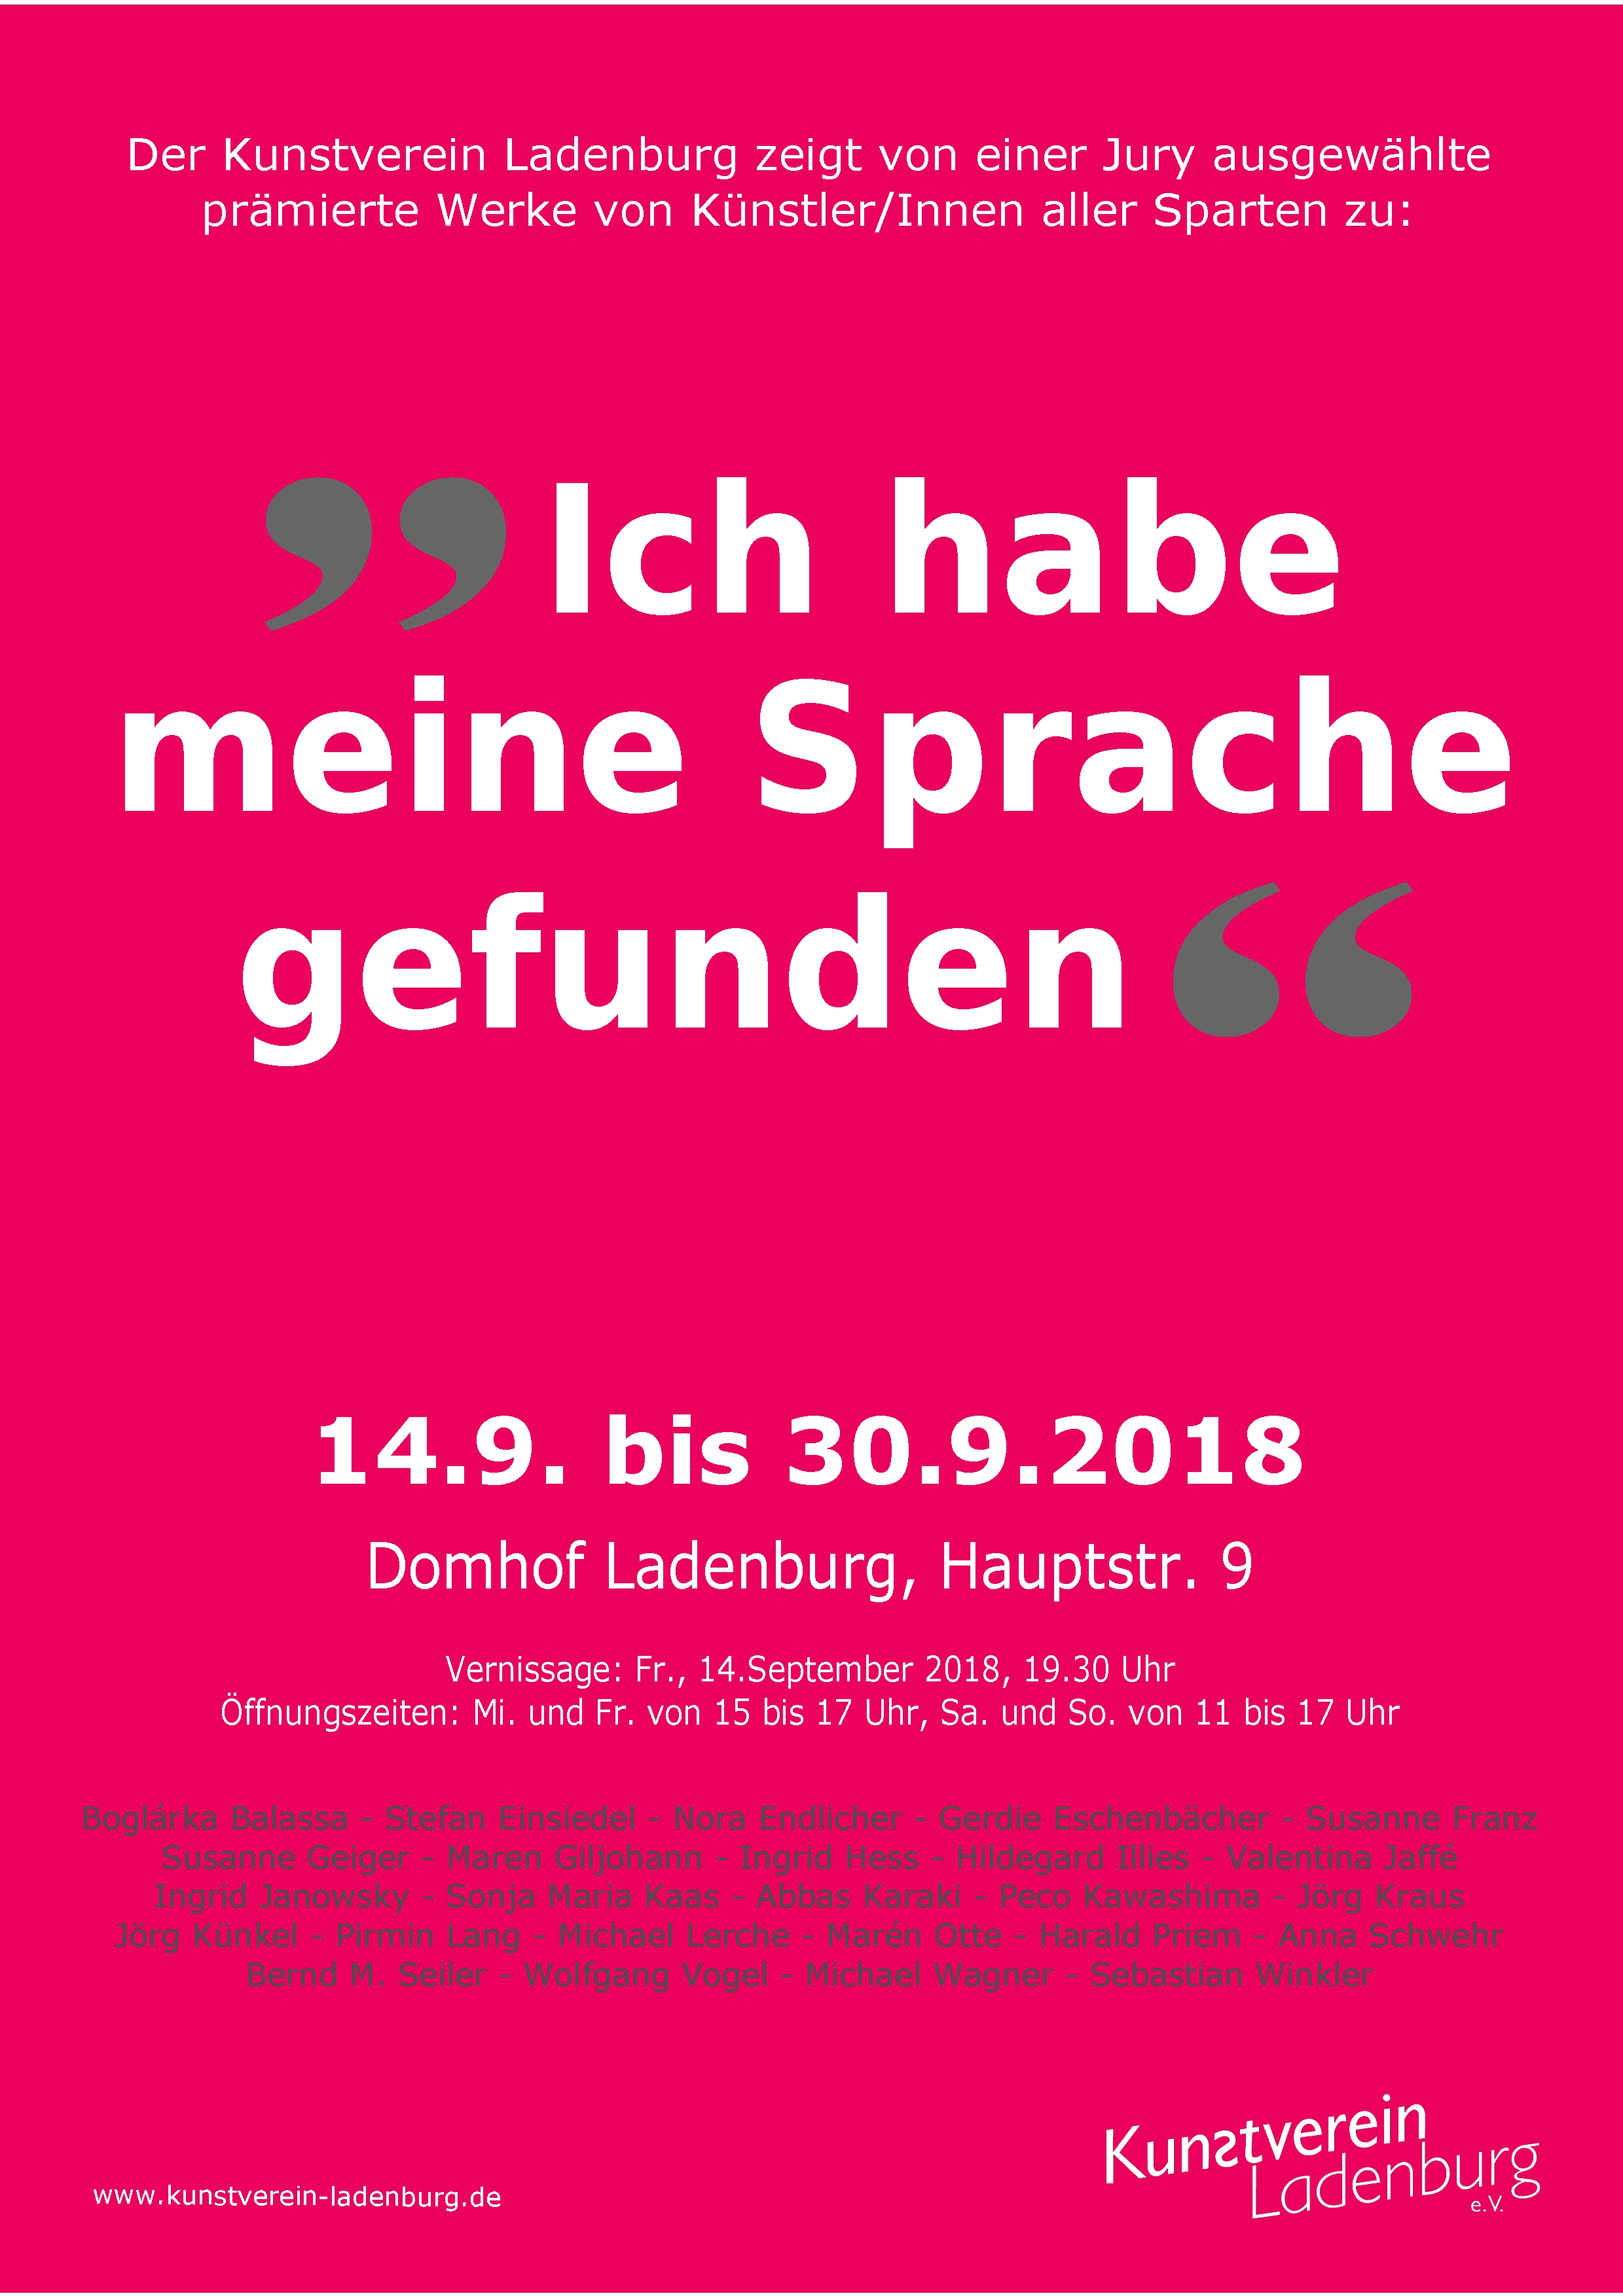 /images/kvl/Ausstellungen/20180914_IchHabeMeineSpracheGefunden/original/00_Sprache Plakat-300.jpg